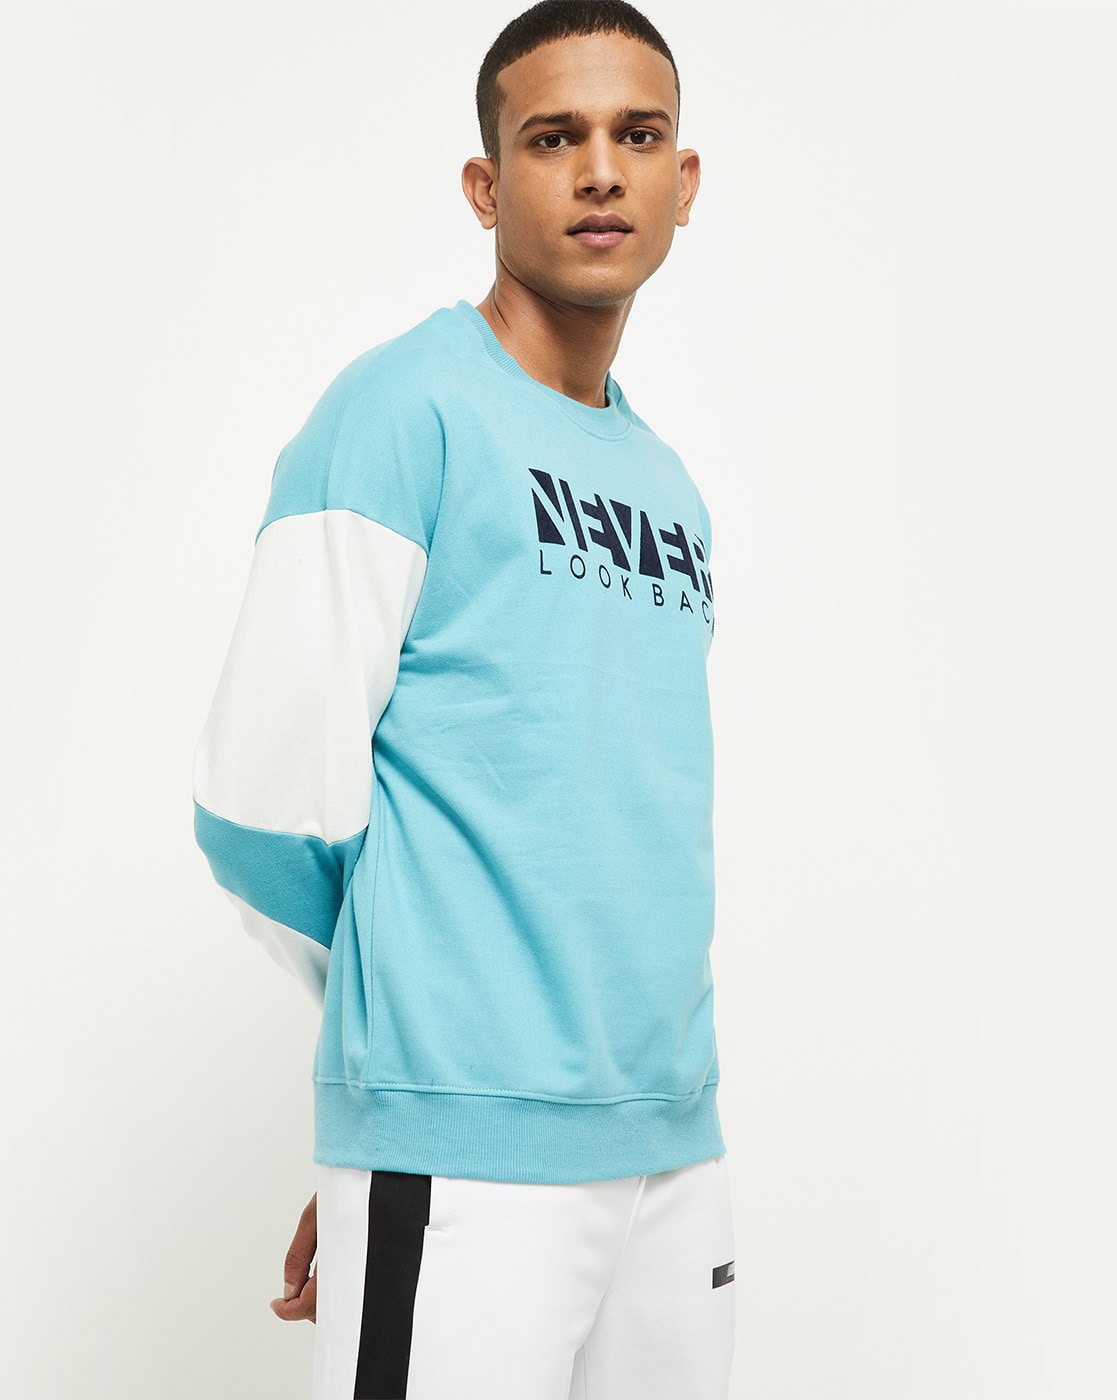 Buy Blue Sweatshirt & Hoodies for Men by max Online